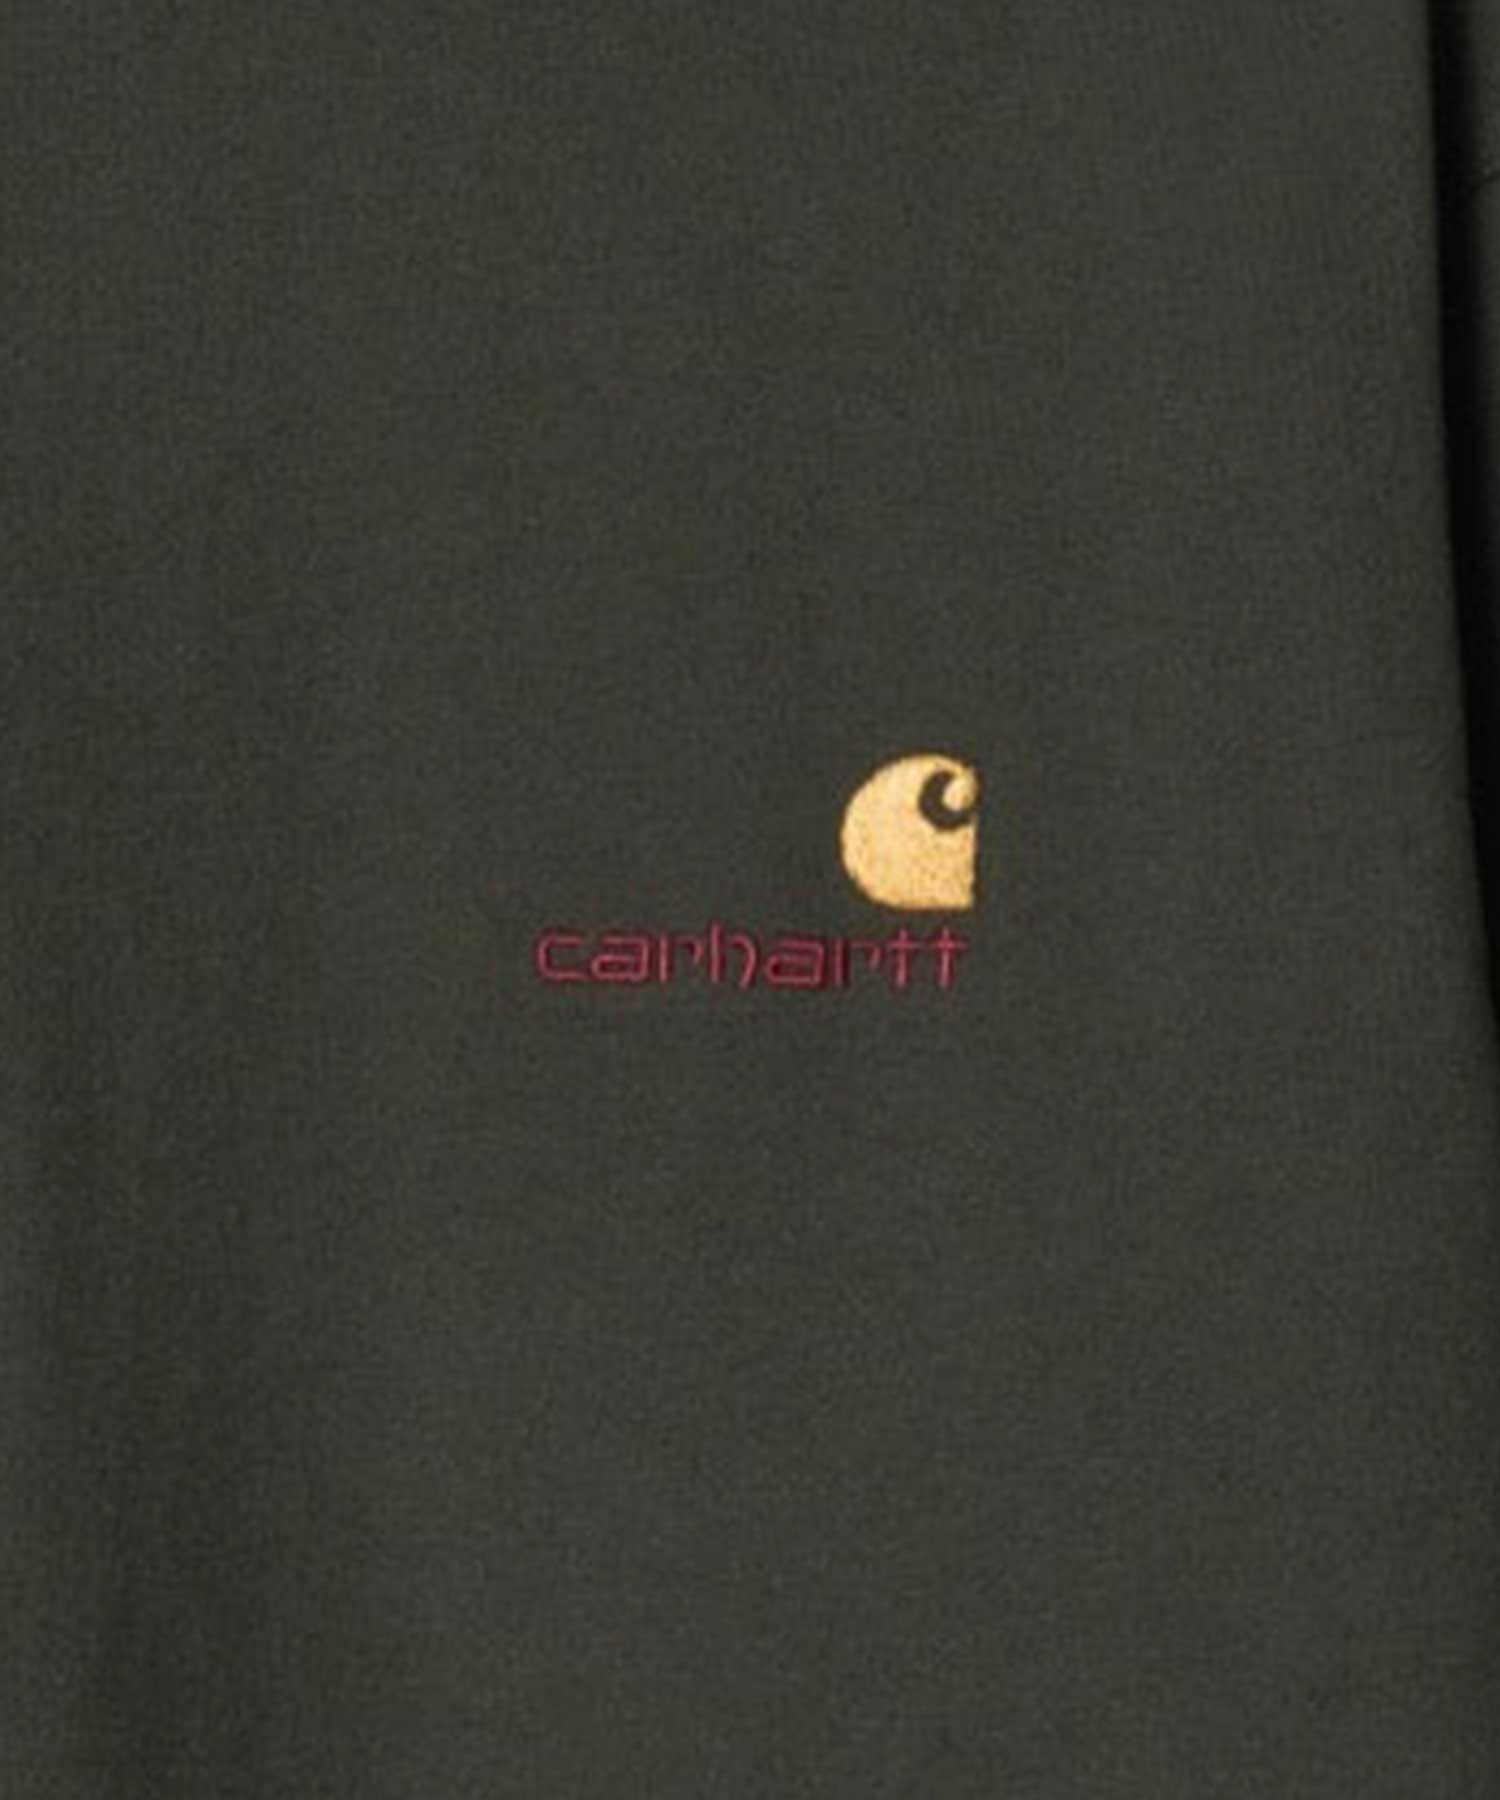 Carhartt WIP/カーハートダブリューアイピー メンズ 長袖 Tシャツ ルーズシルエット ロゴ刺繍 I029955(DGREN-S)